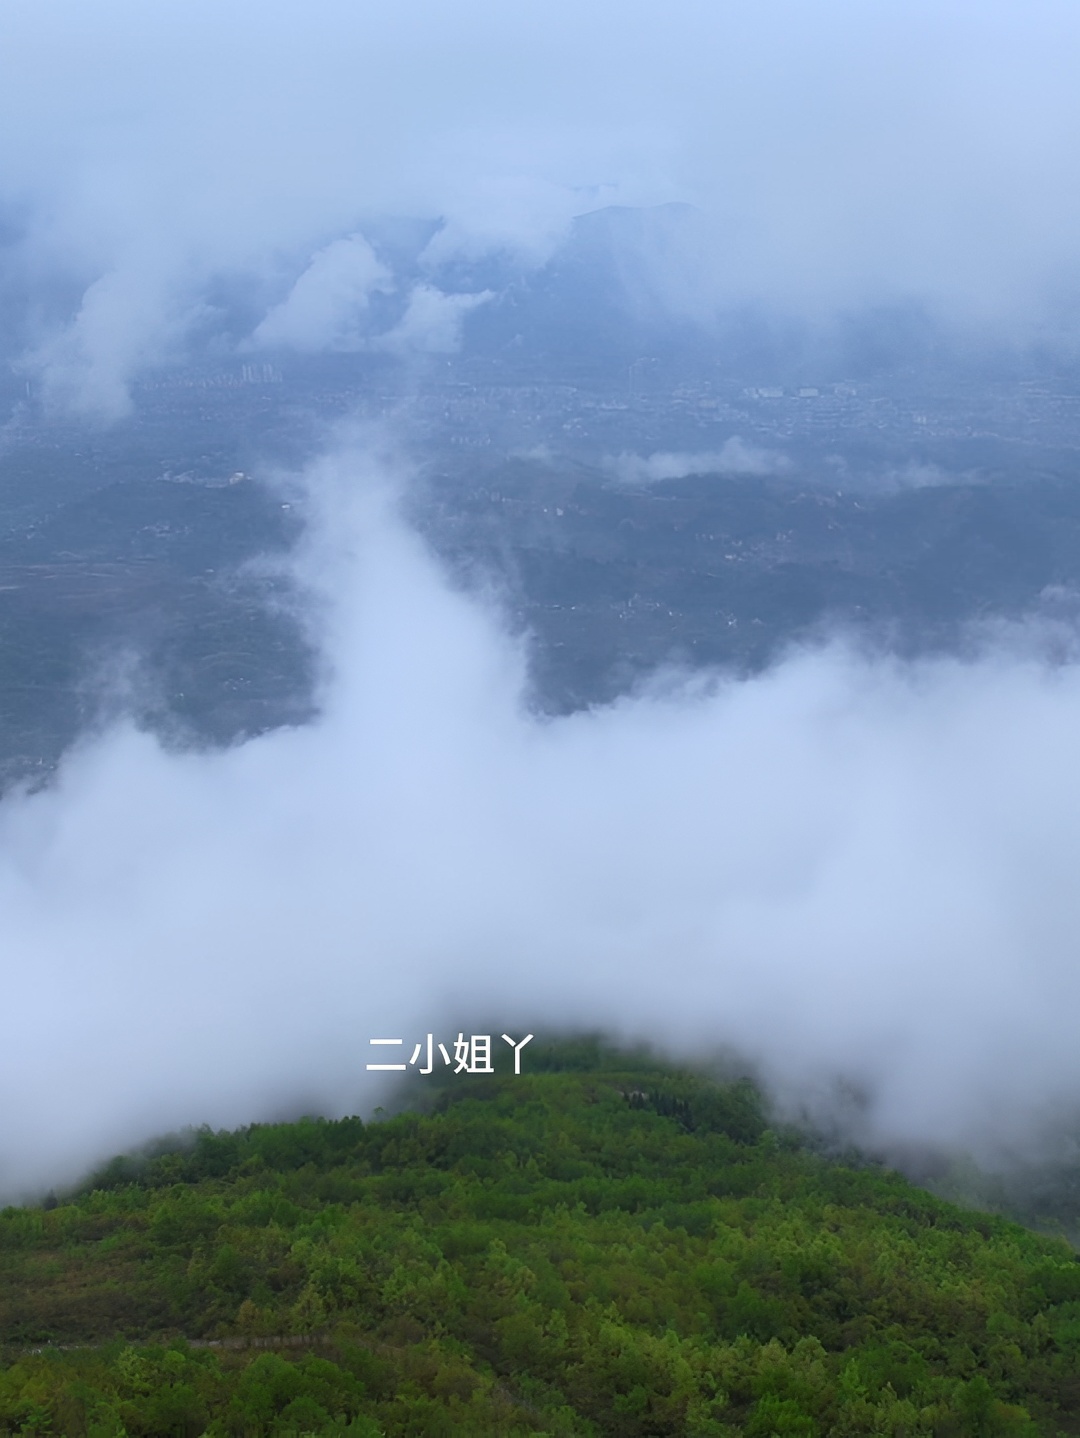 云雾缭绕人间仙境，这里是贵州省正安县吉他之乡 #正安吉他之乡 #云雾缭绕的人间仙境 #感受大自然的美